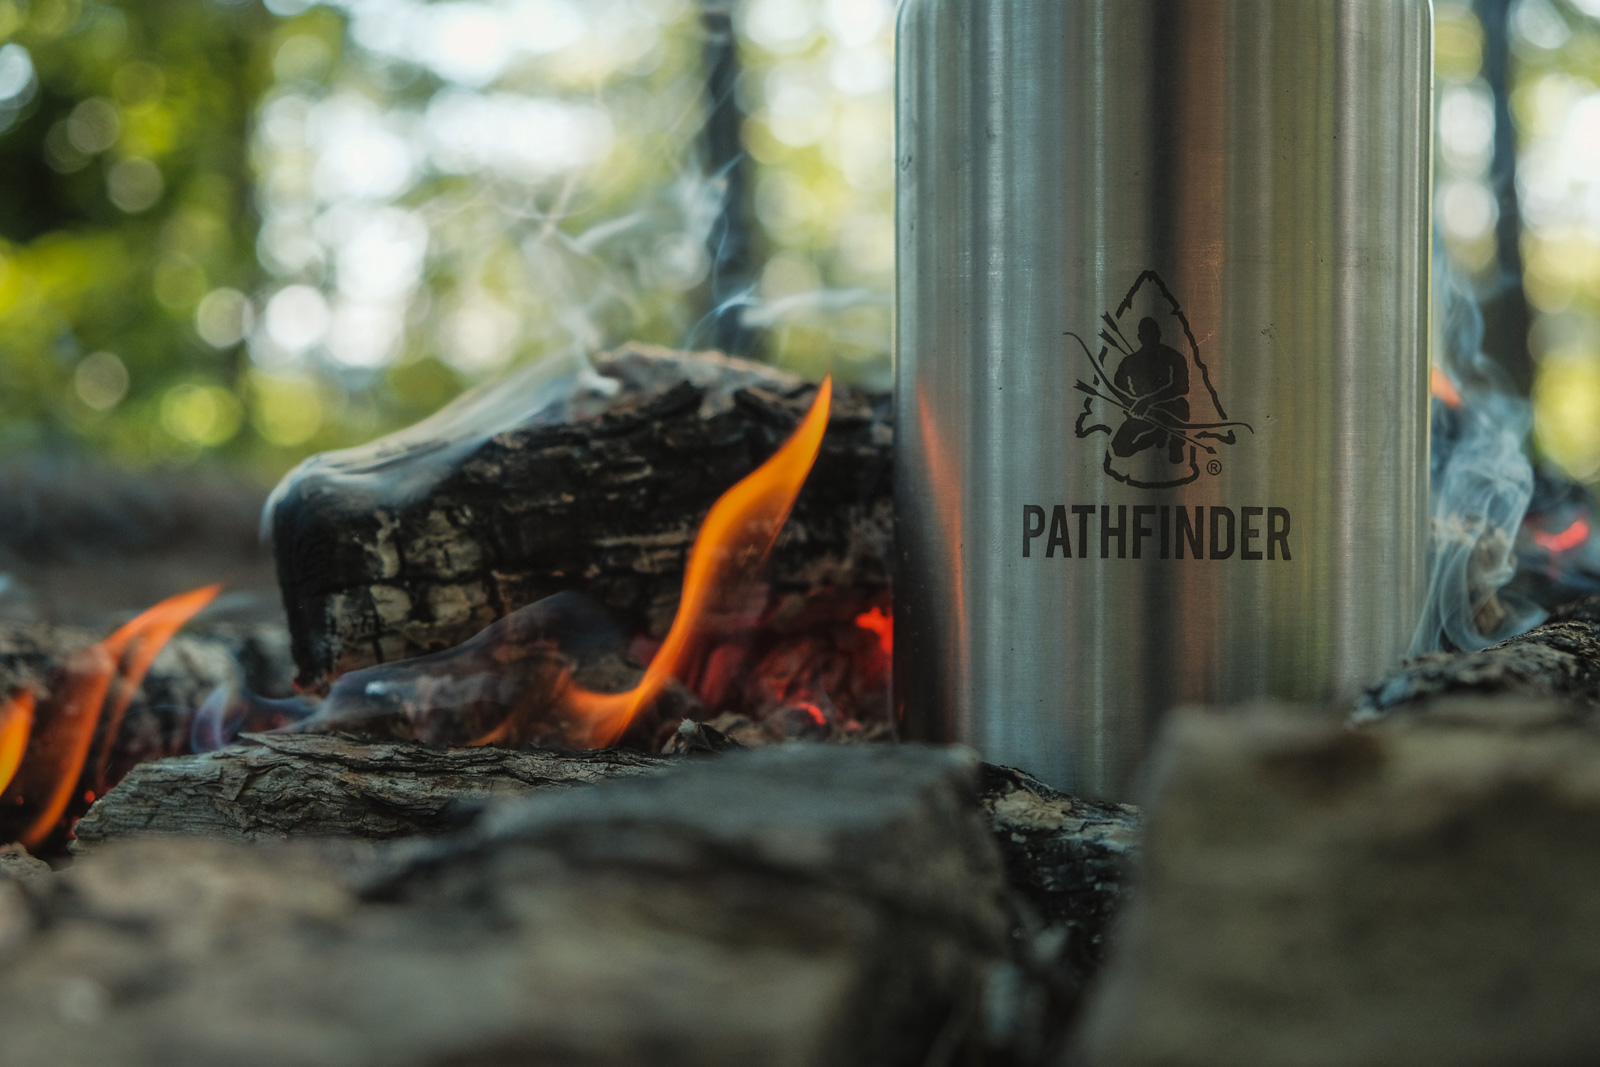 Pathfinder Bottle Cookset